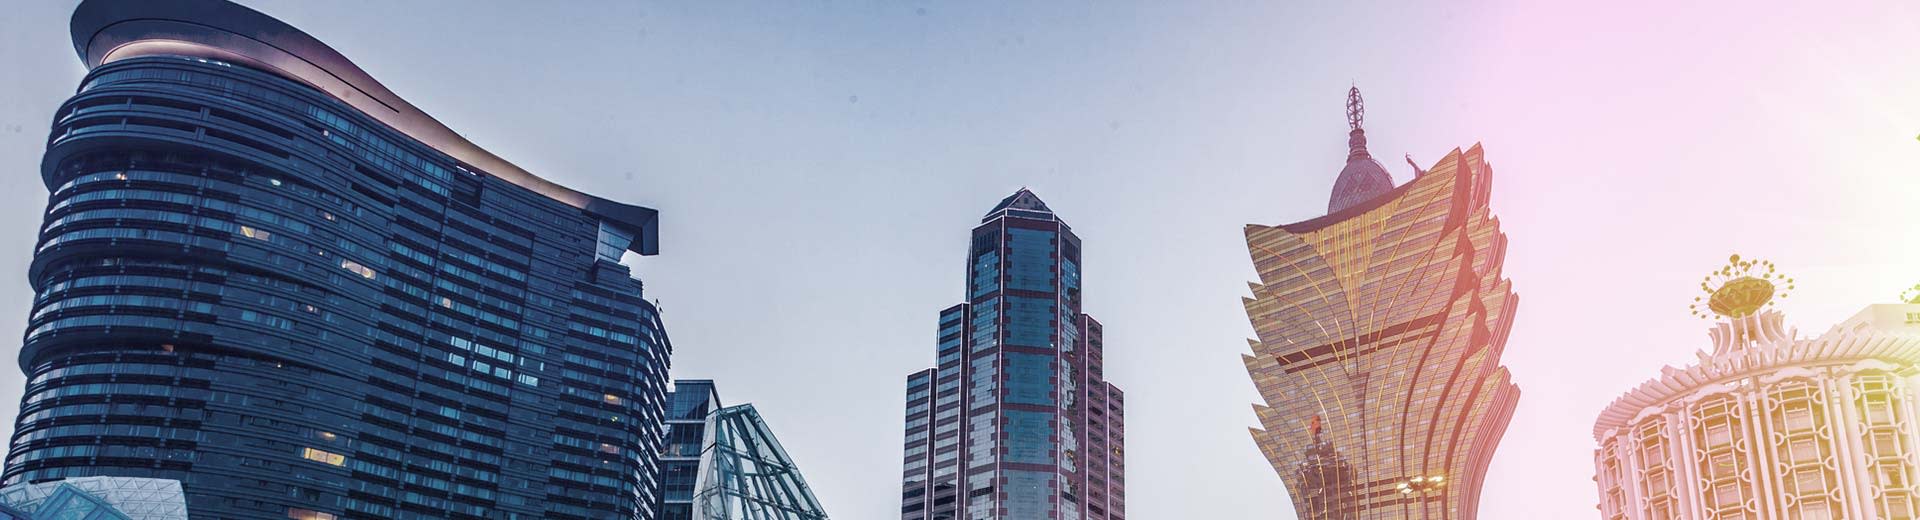 A la luz del anochecer vimos algunos de los edificios más altos de Macao.